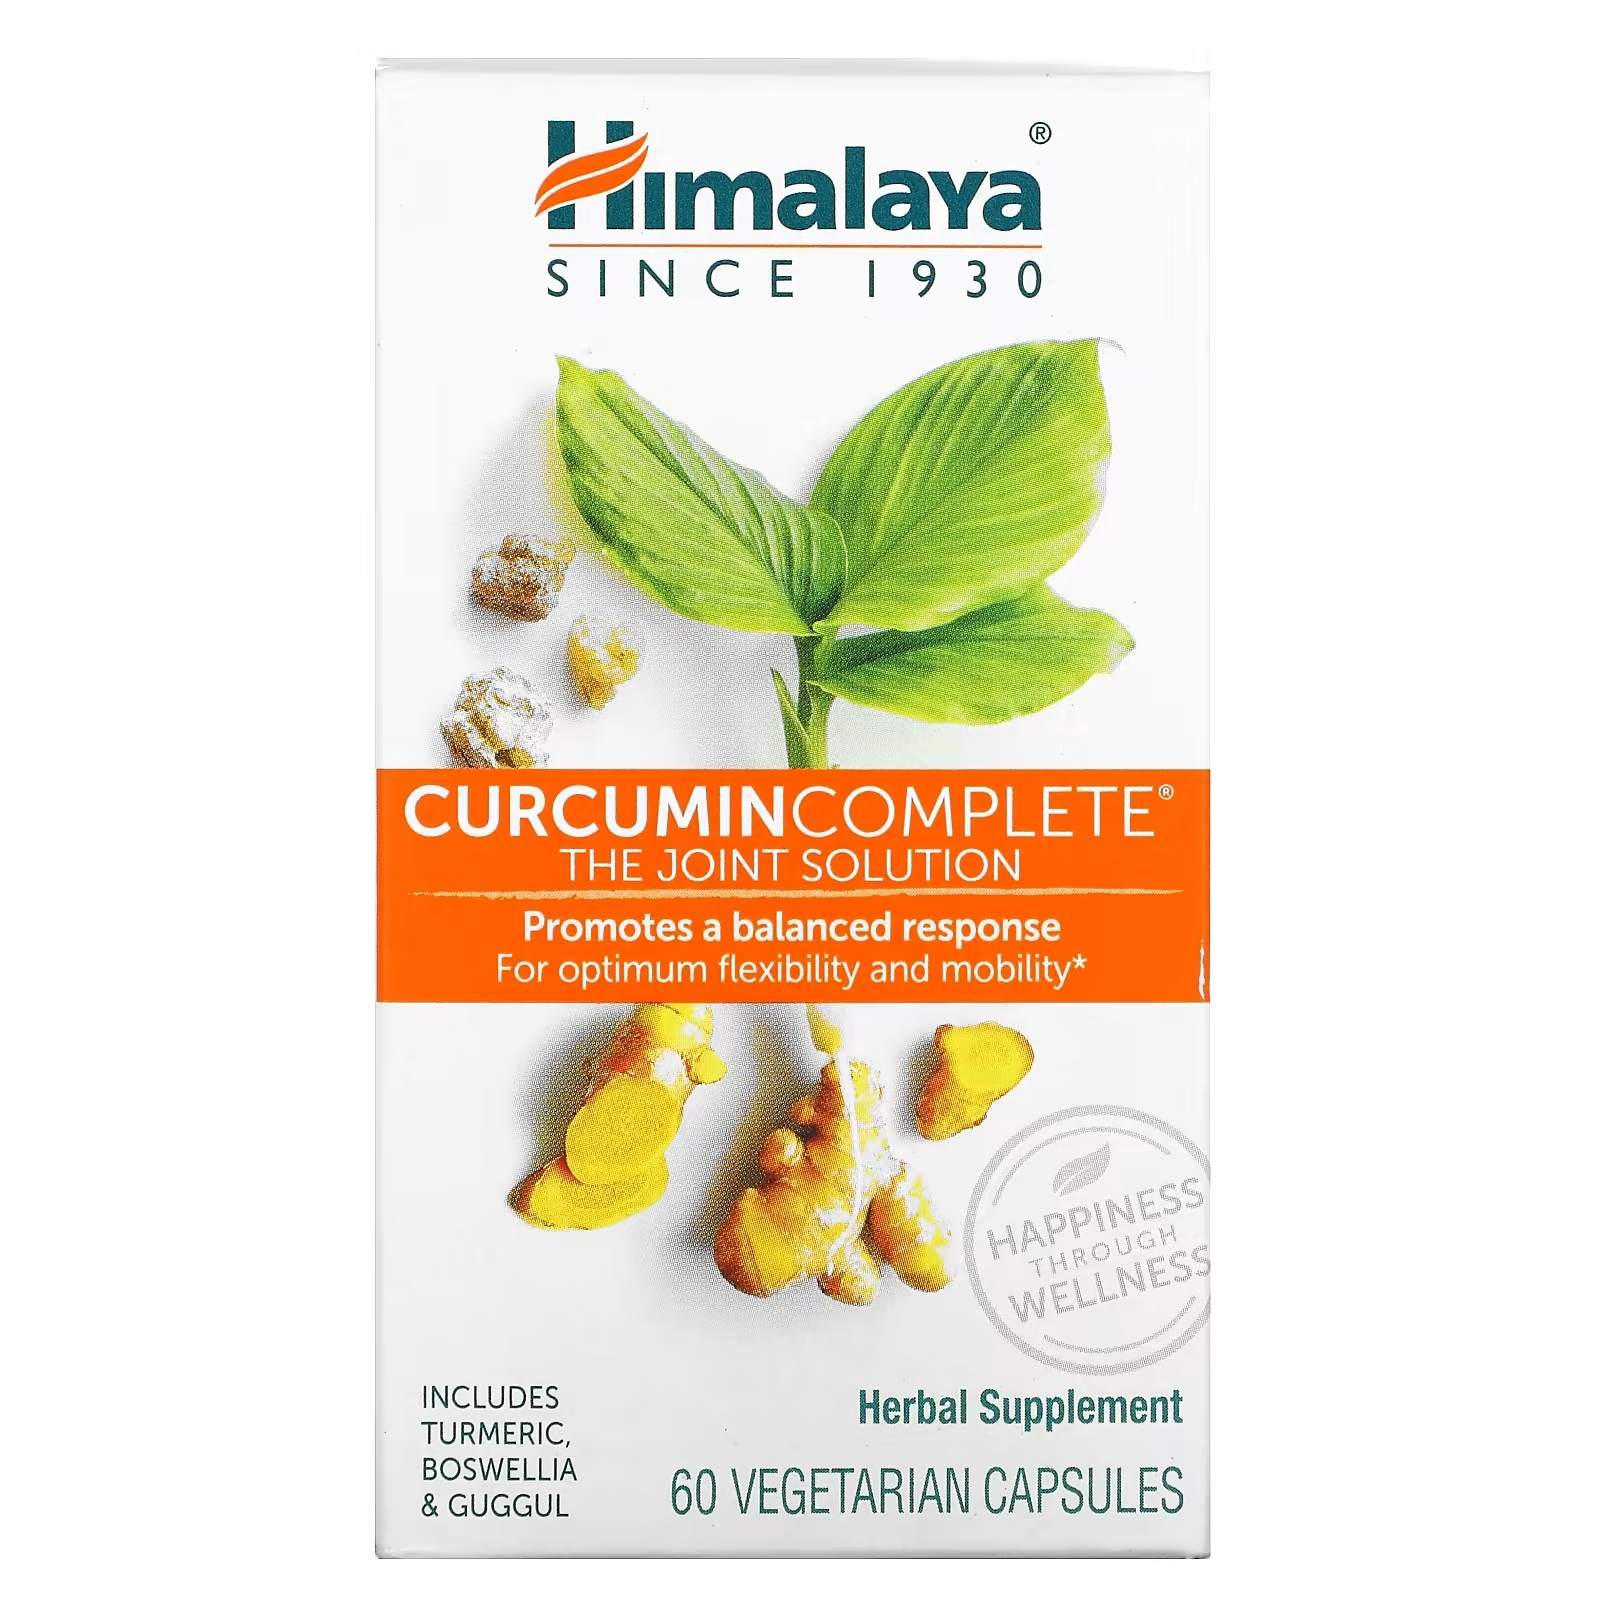 Пищевая Добавка Himalaya Curcumin Complete, 60 вегетарианских капсул himalaya curcumin complete совместное решение 60 вегетарианских капсул